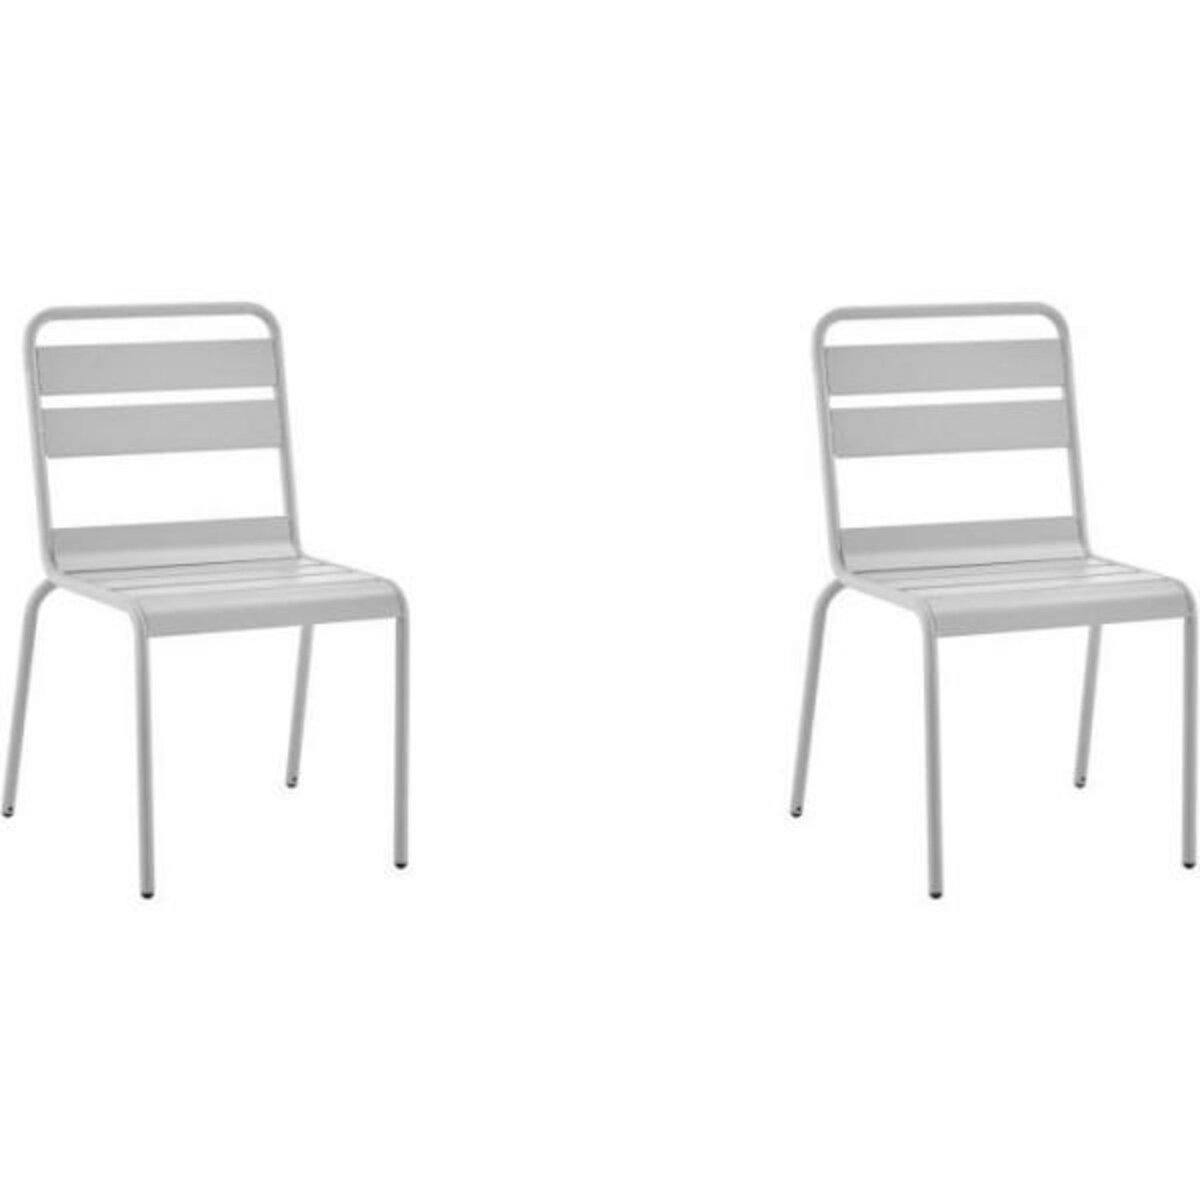 MARKET24 Lot de 2 chaises de jardin en acier gris - IRONCH2GR - 43 x 43 x 86 cm